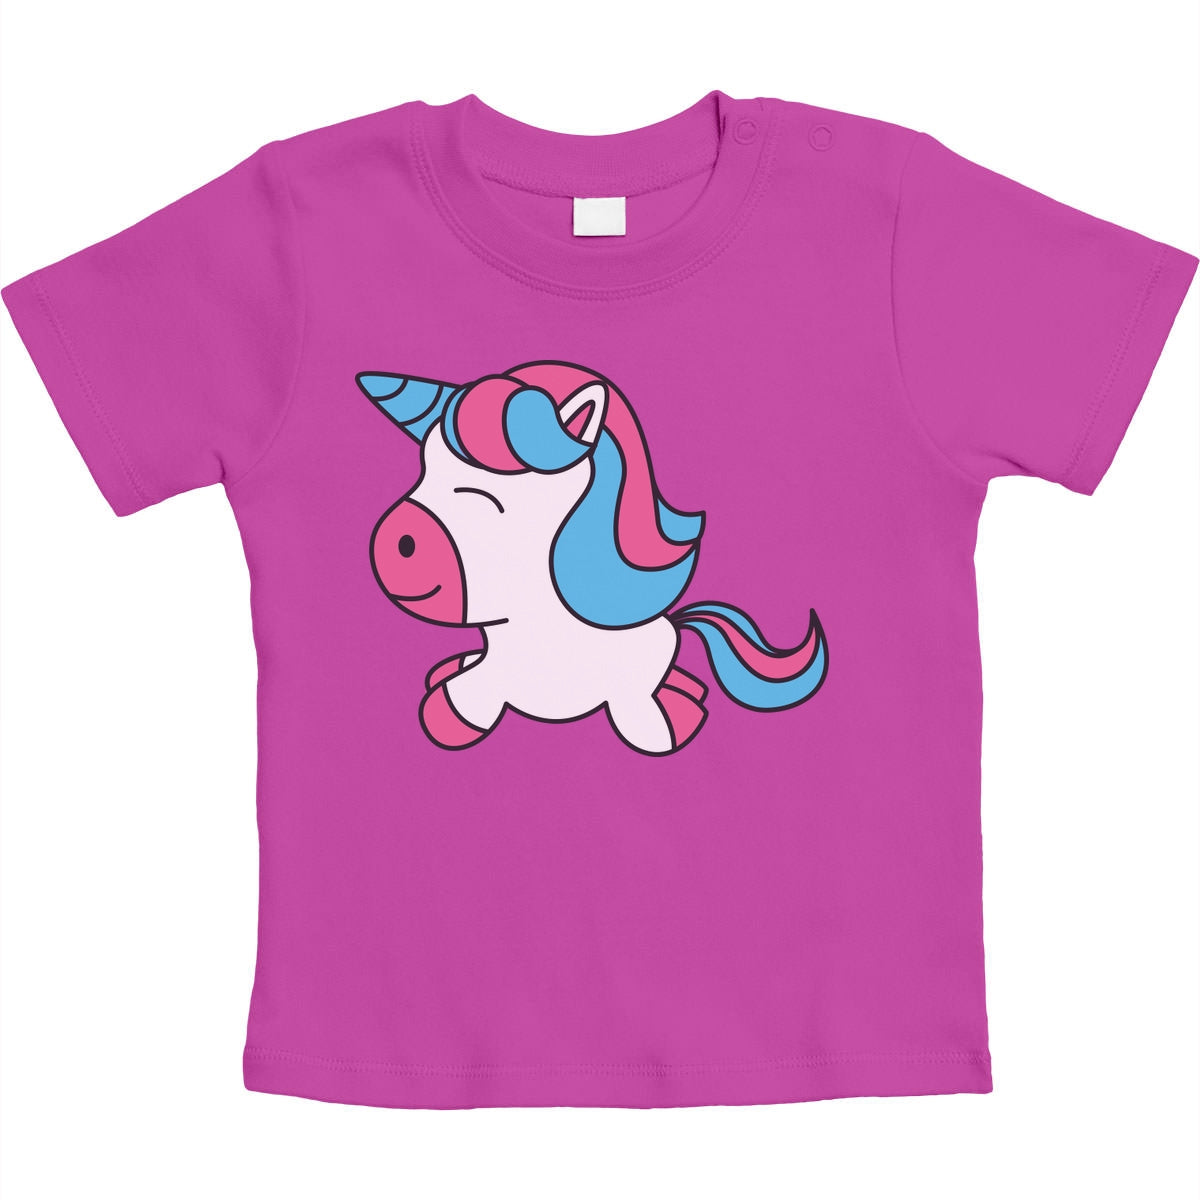 Süßes Einhorn Baby Pferde Kleidung Unicorn Motive Unisex Baby T-Shirt Gr. 66-93